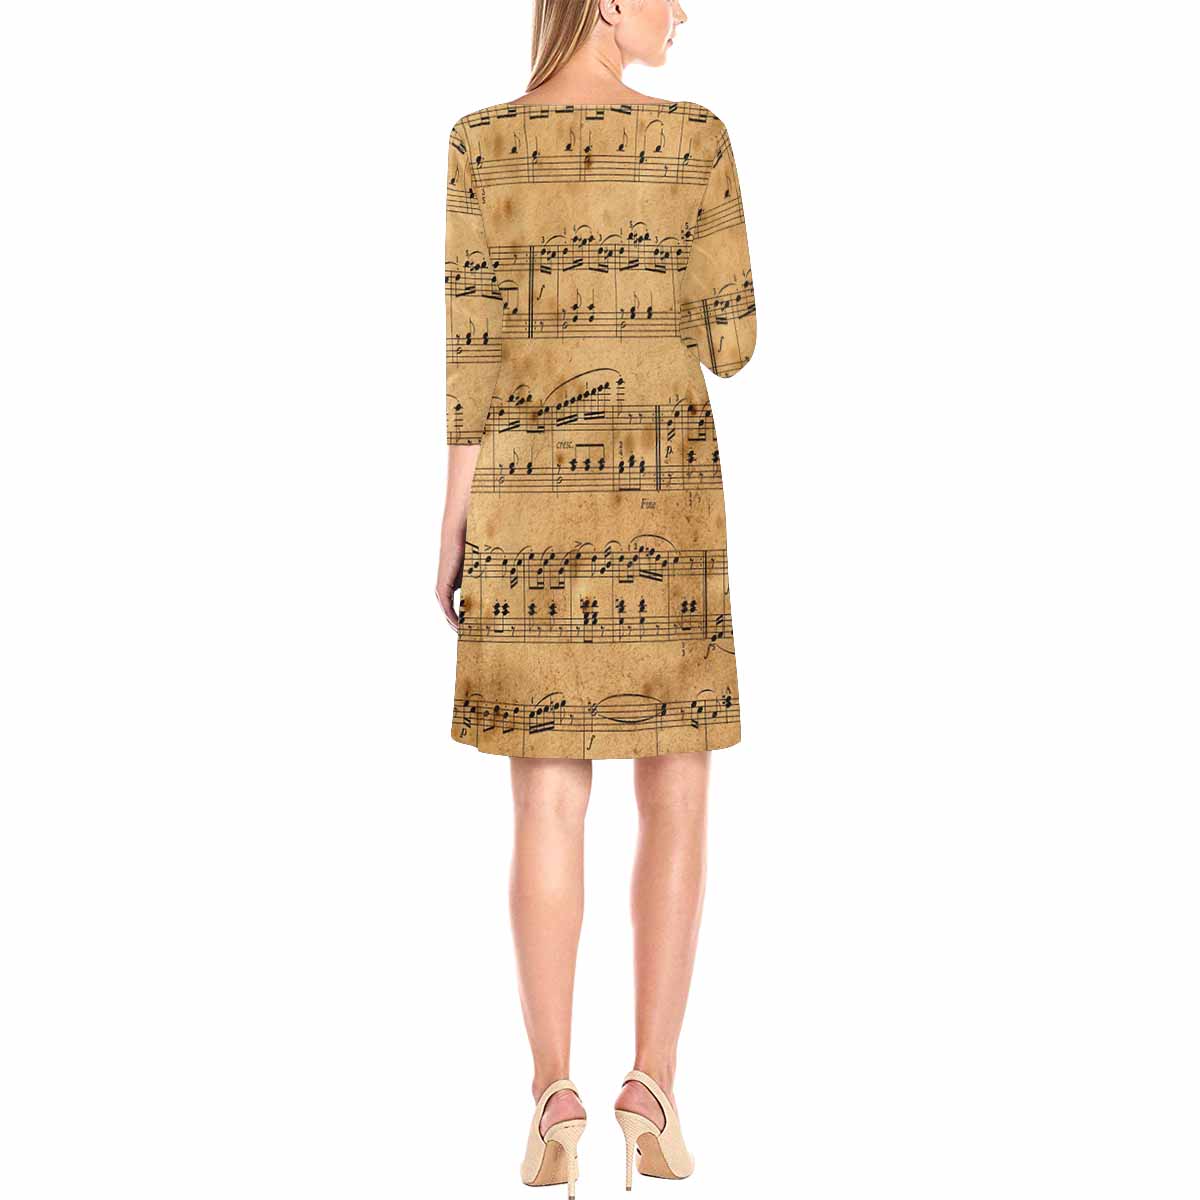 Antique General loose dress, MODEL 29532, design 34